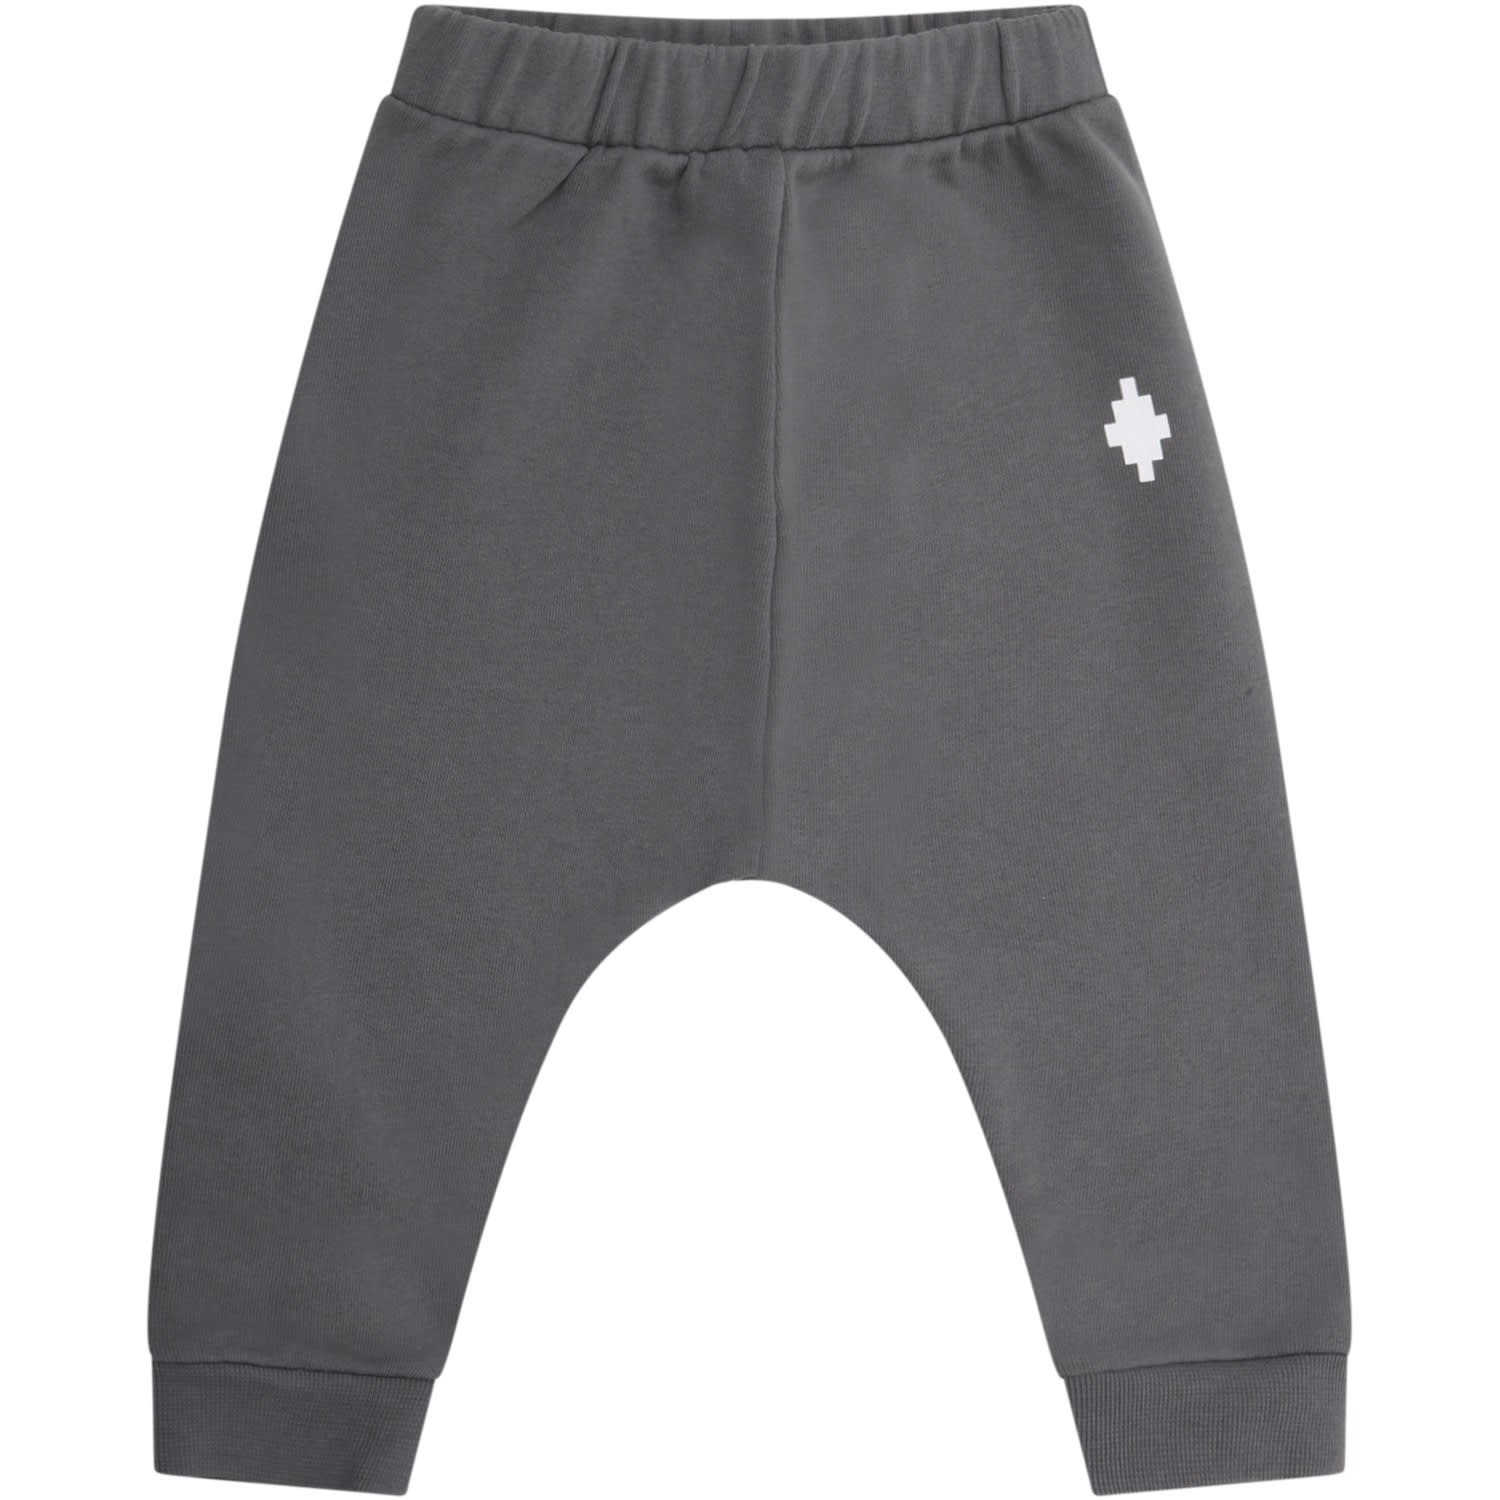 Marcelo Burlon Grey Sweatpants For Babyboy With Cross